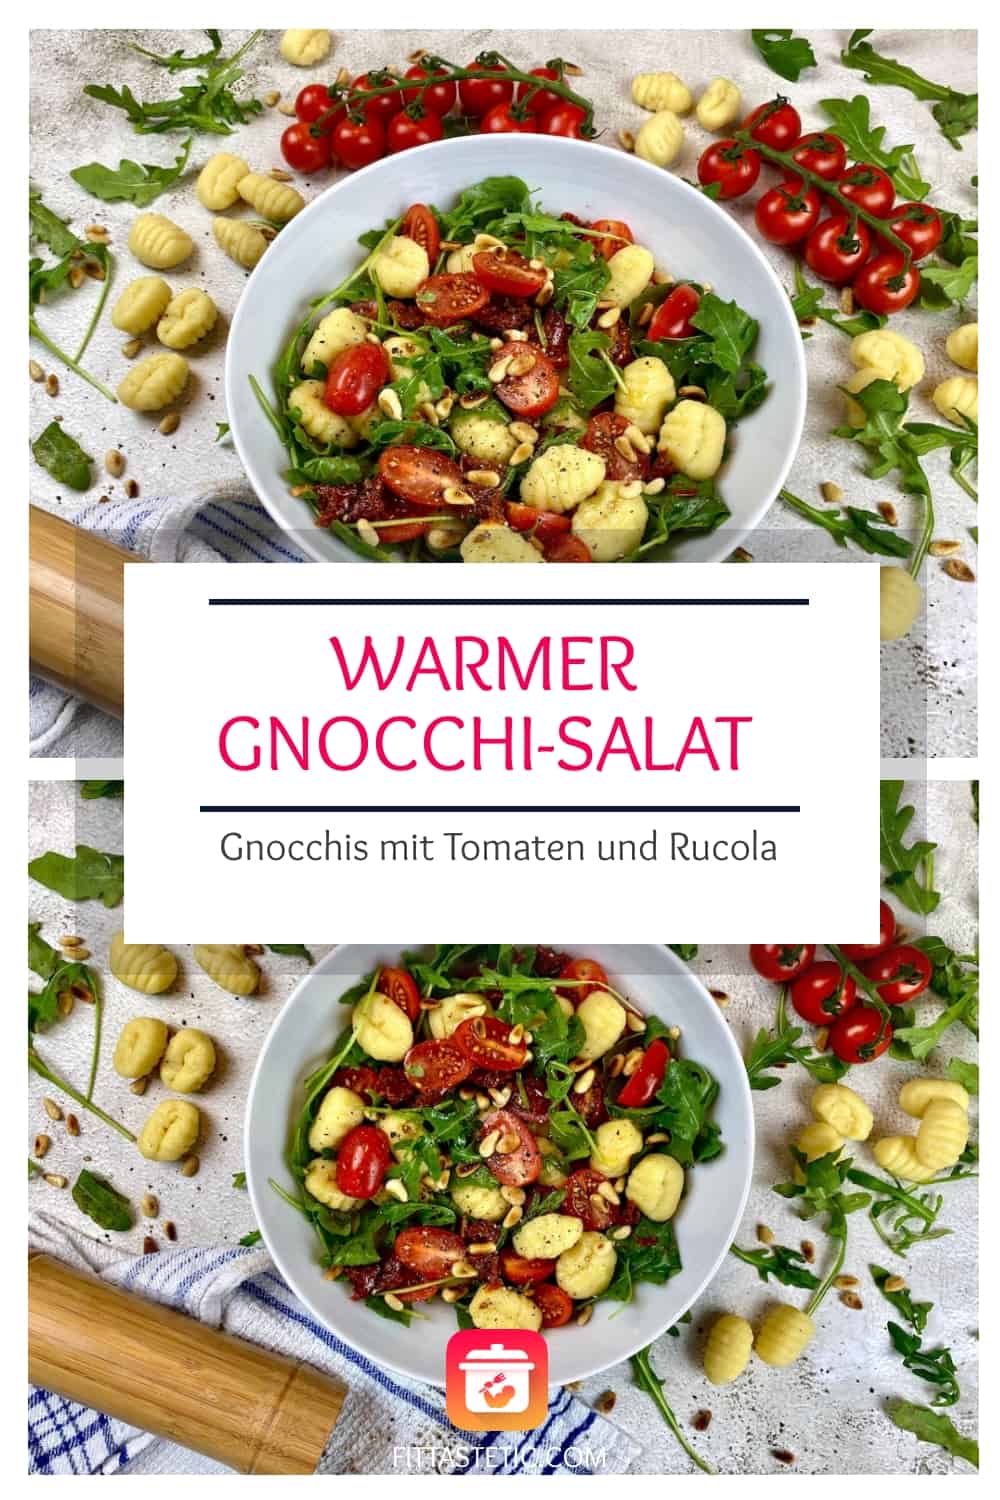 Warmer Gnocchi-Salat - Gnocchis mit Tomaten und Rucola